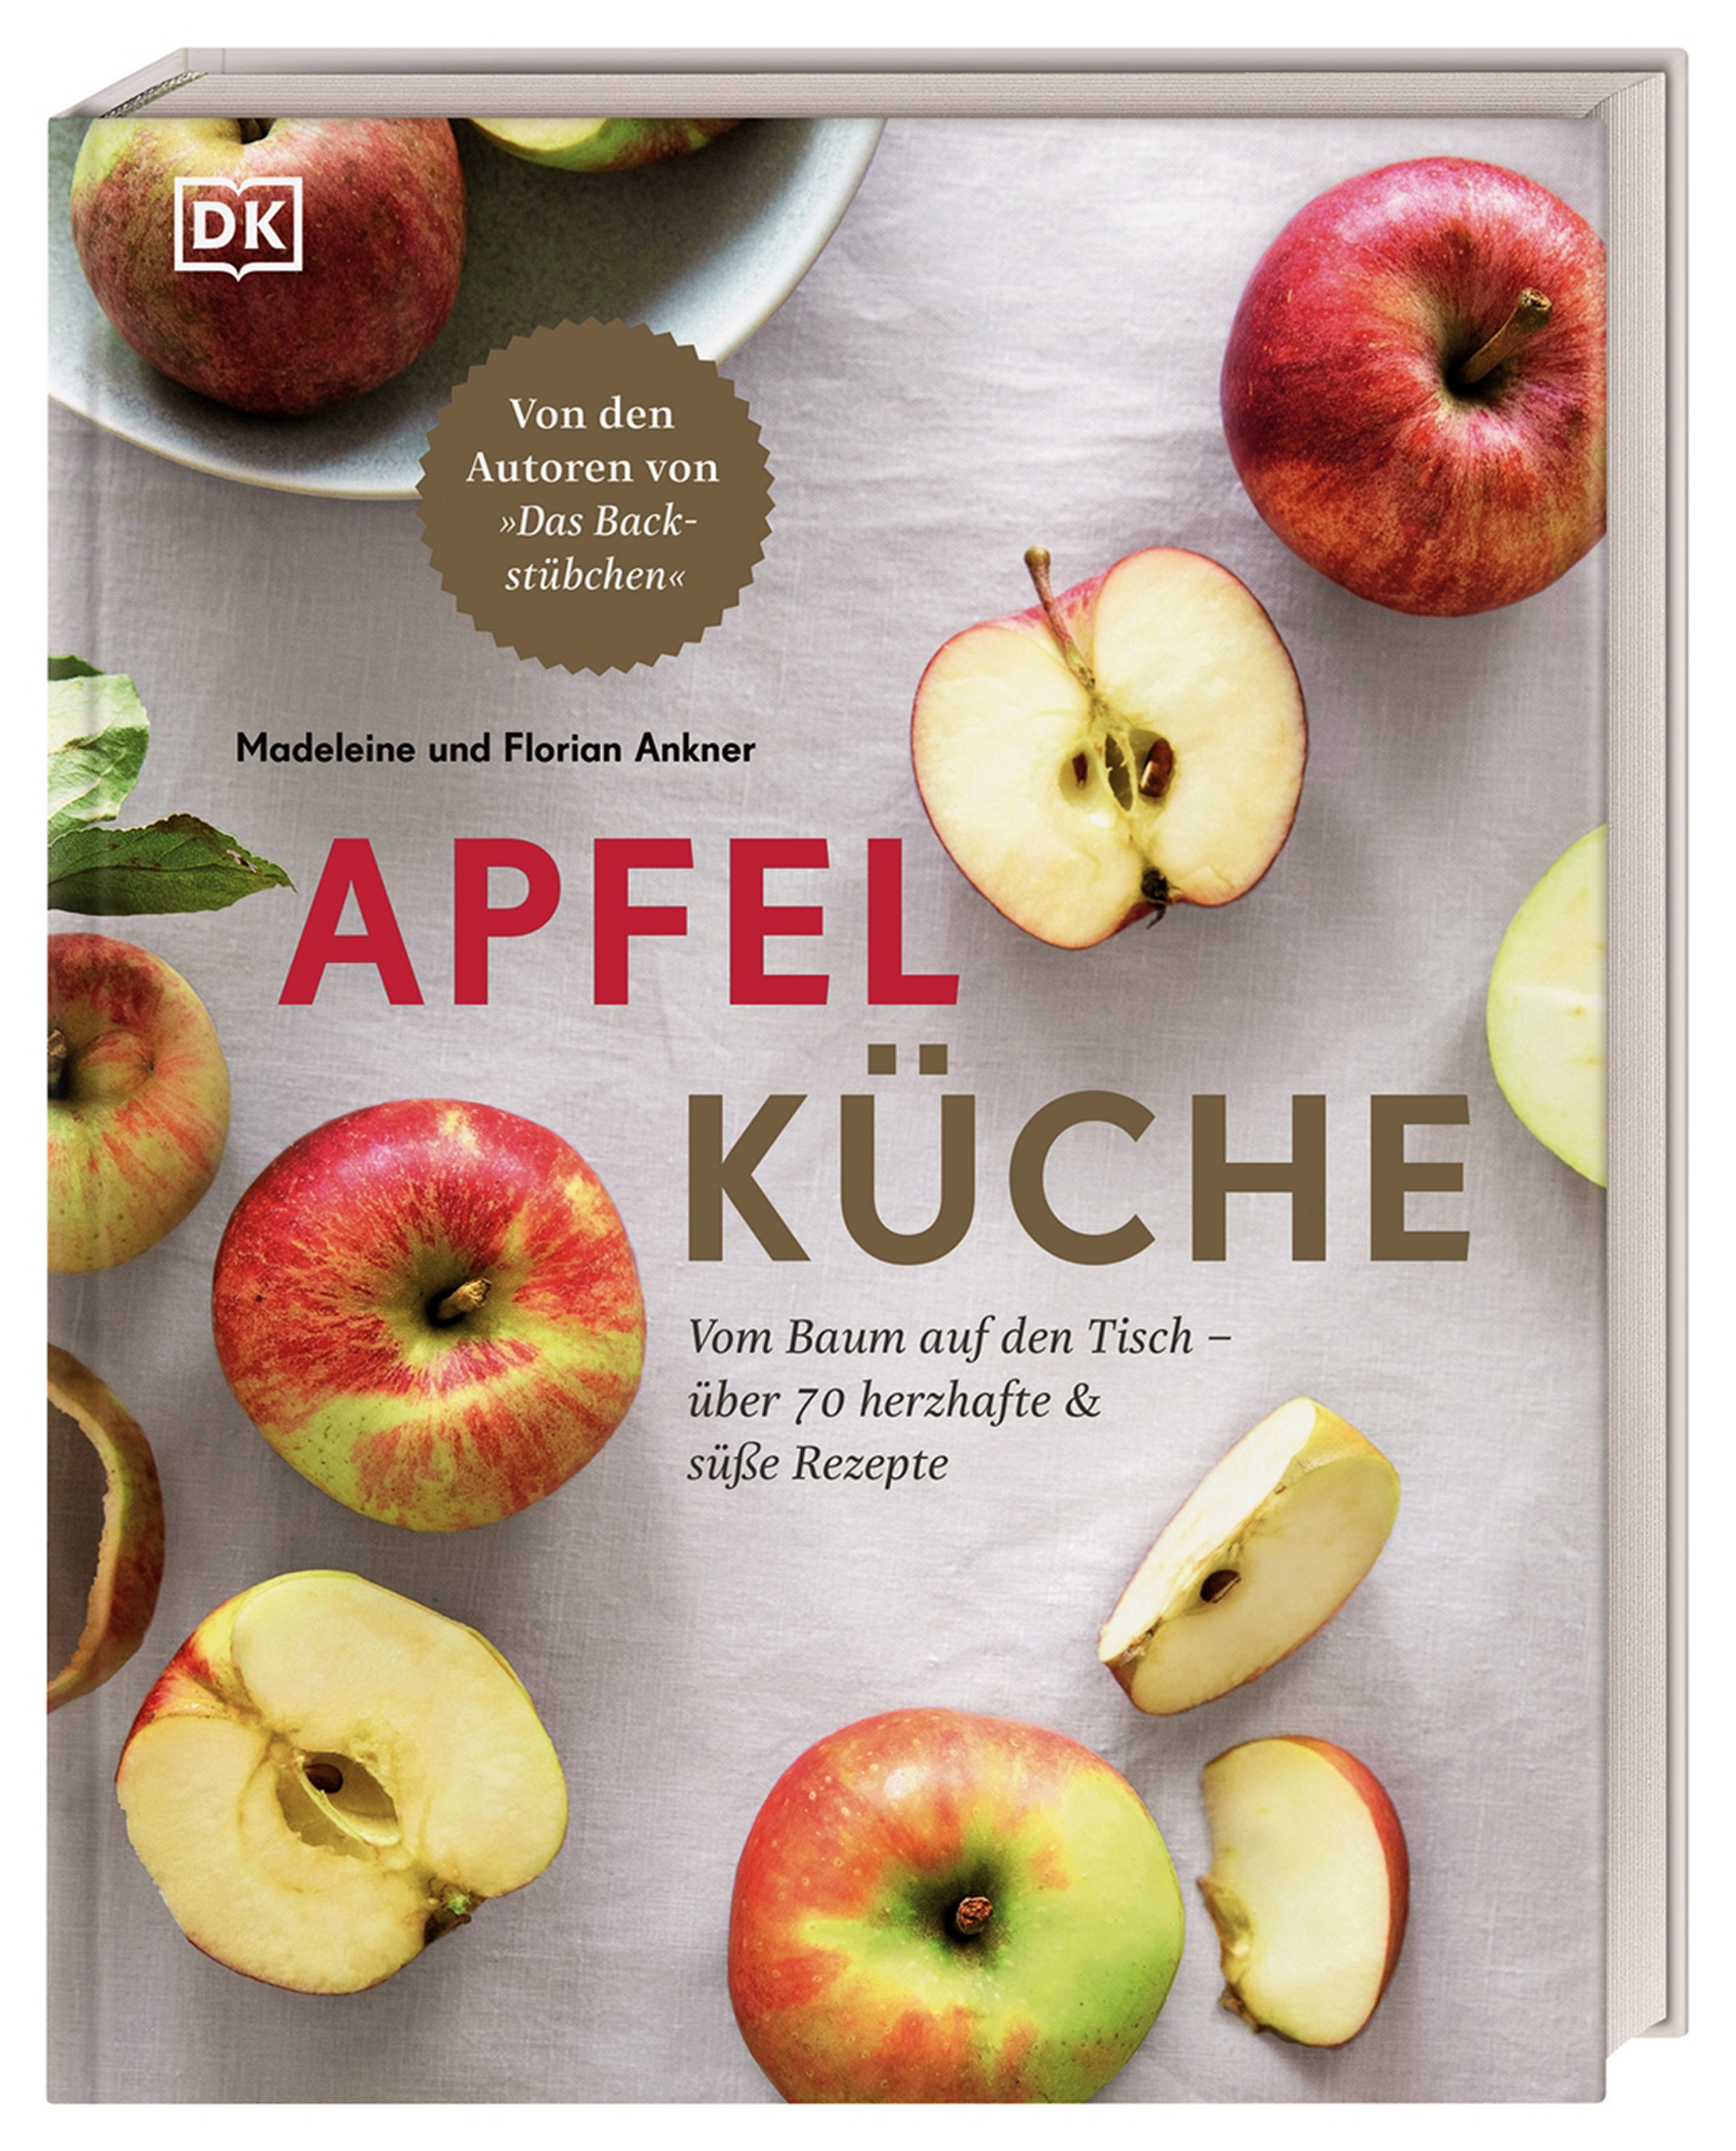 Apfelküche. Vom Baum auf den Tisch – über 70 herzhafte & süße Rezepte